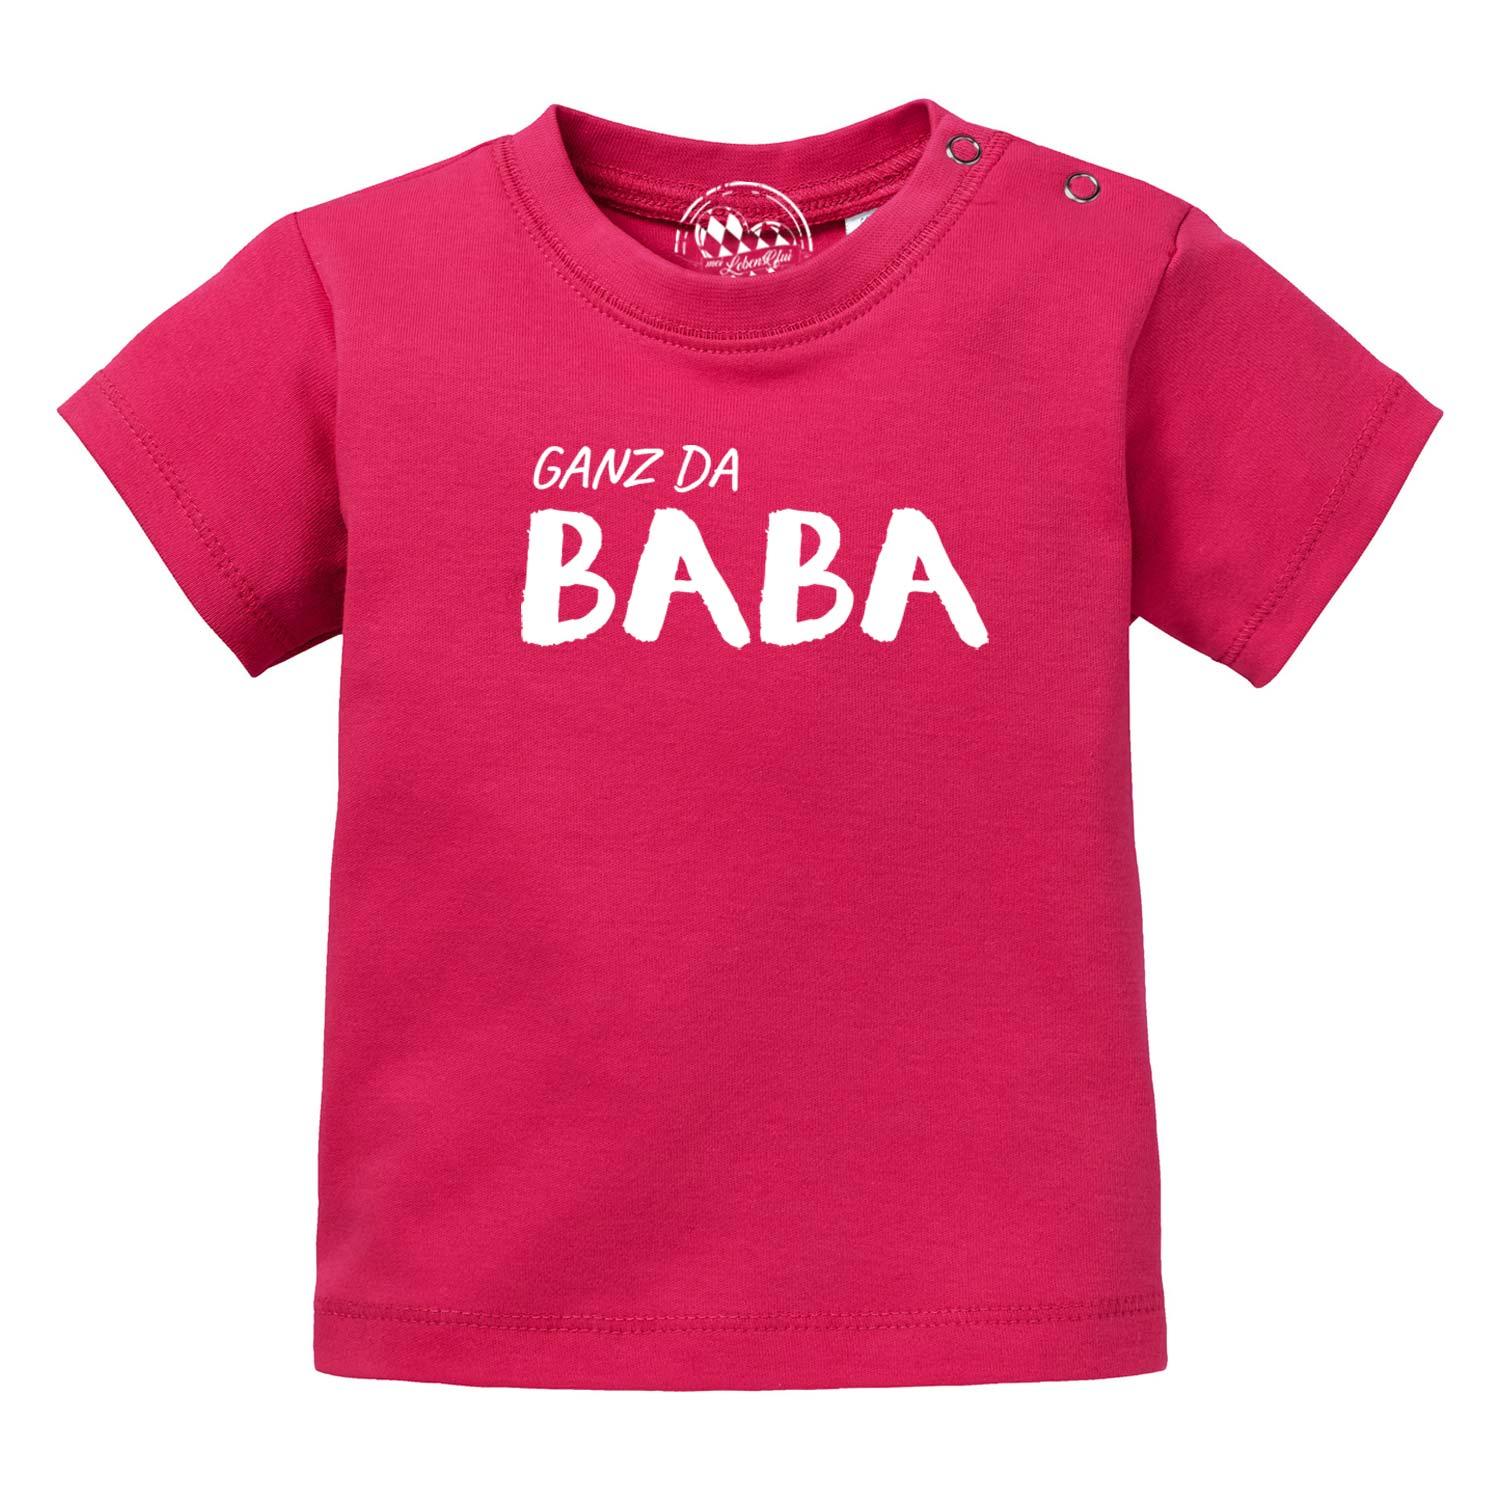 Baby T-Shirt "Ganz da Baba!" - bavariashop - mei LebensGfui